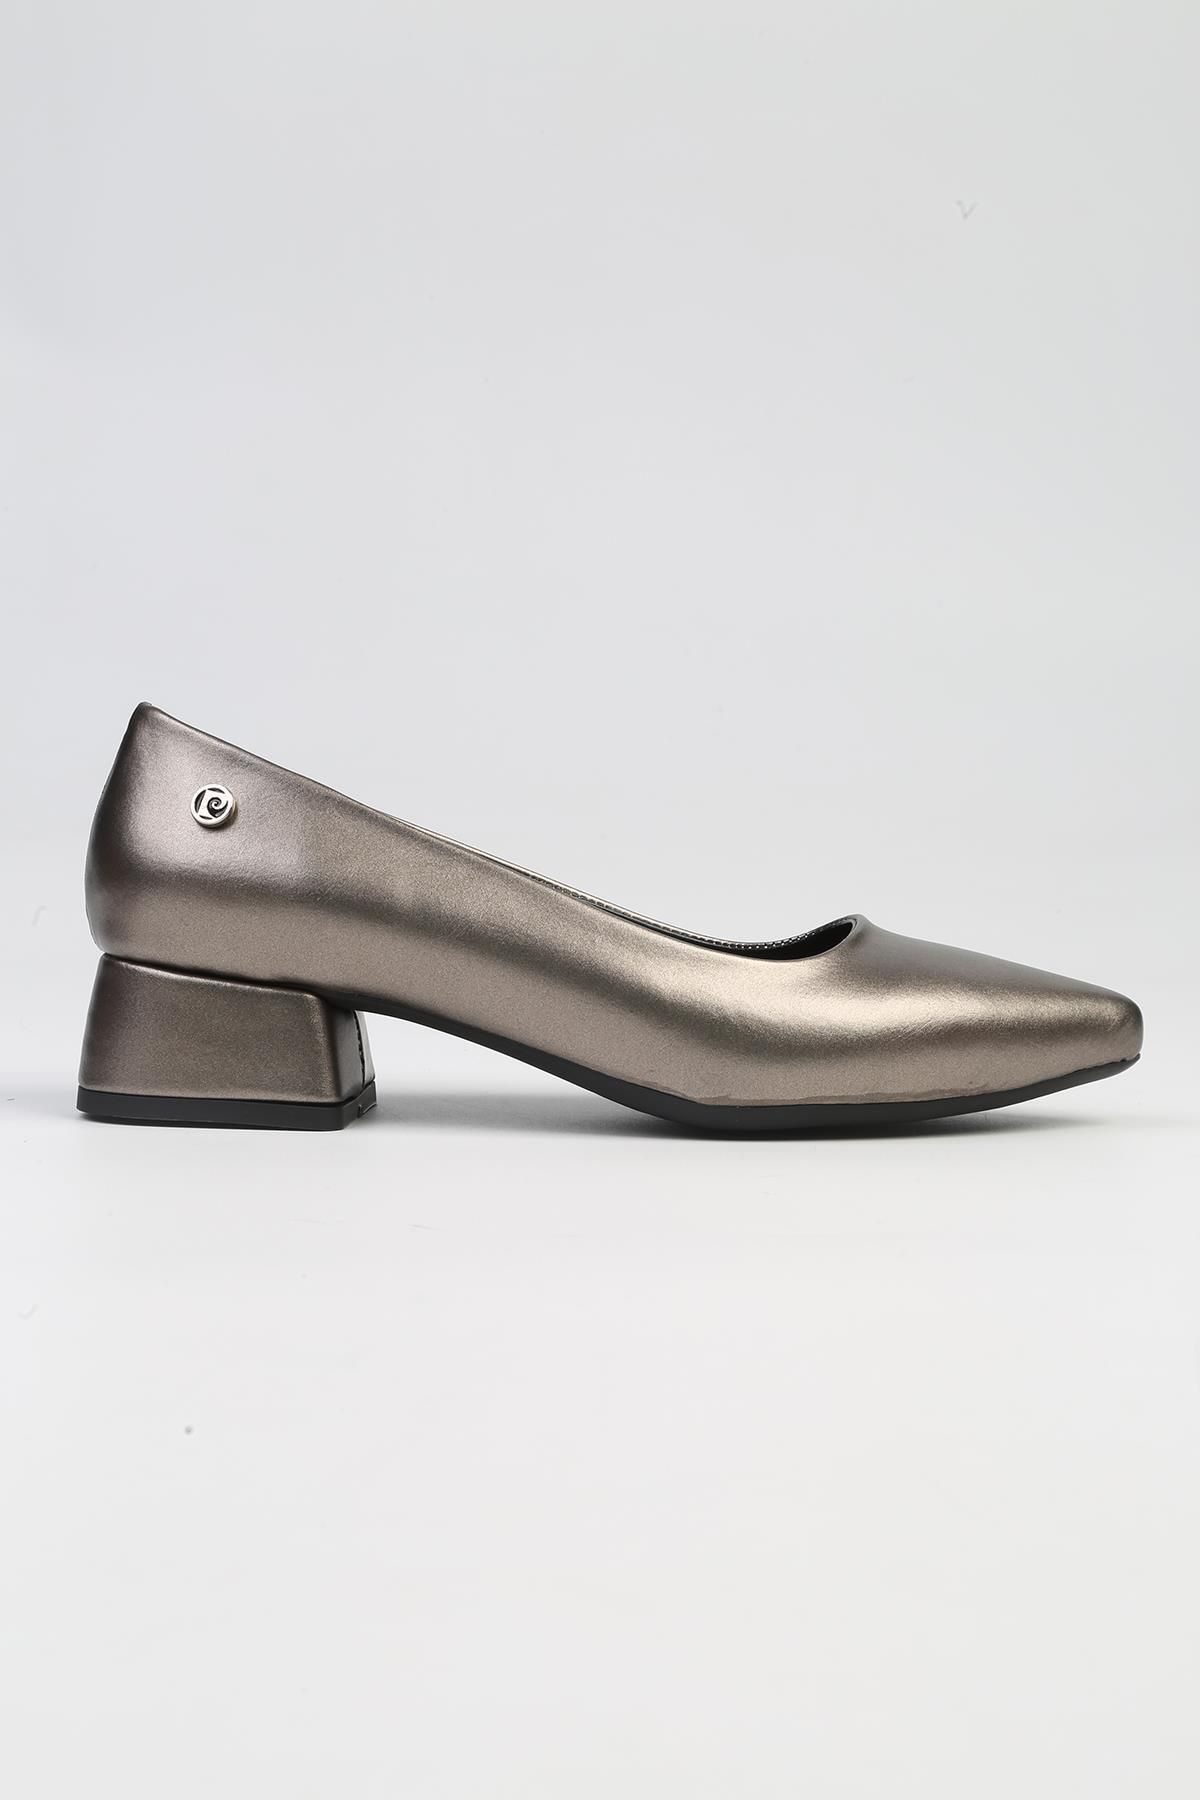 Pierre Cardin ® | PC-53106- 3592 Platin Cilt-Kadın Kısa Topuk Ayakkabı